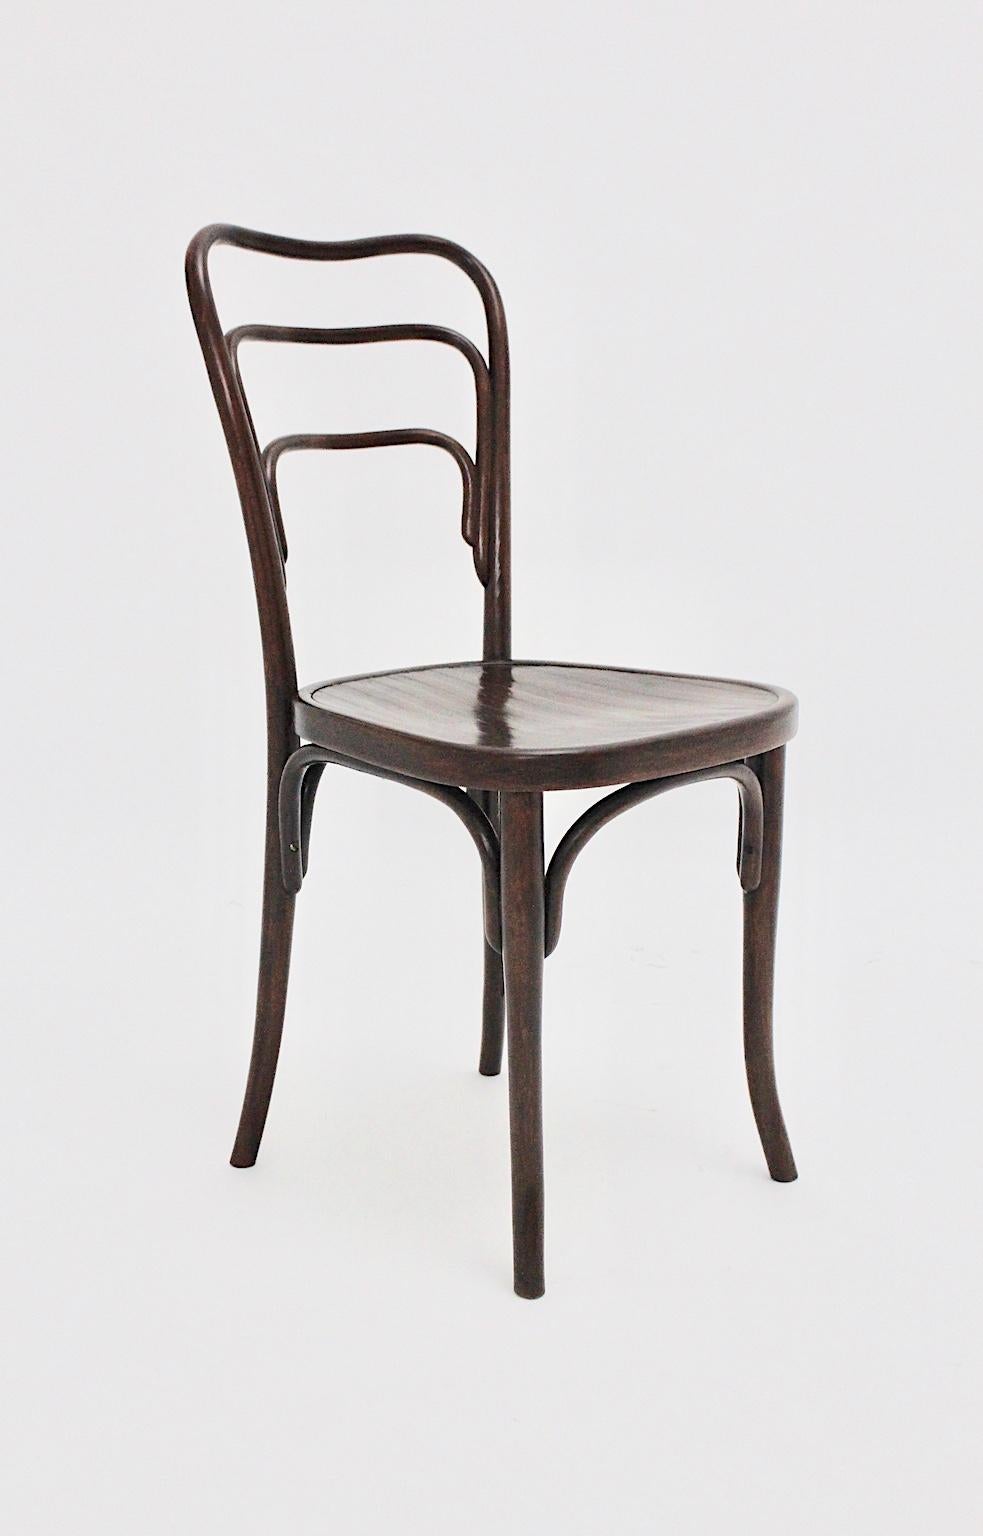 Beech Jugendstil Vintage Bentwood Chair No 249 a by J. & J. Kohn, circa 1916, Austria For Sale